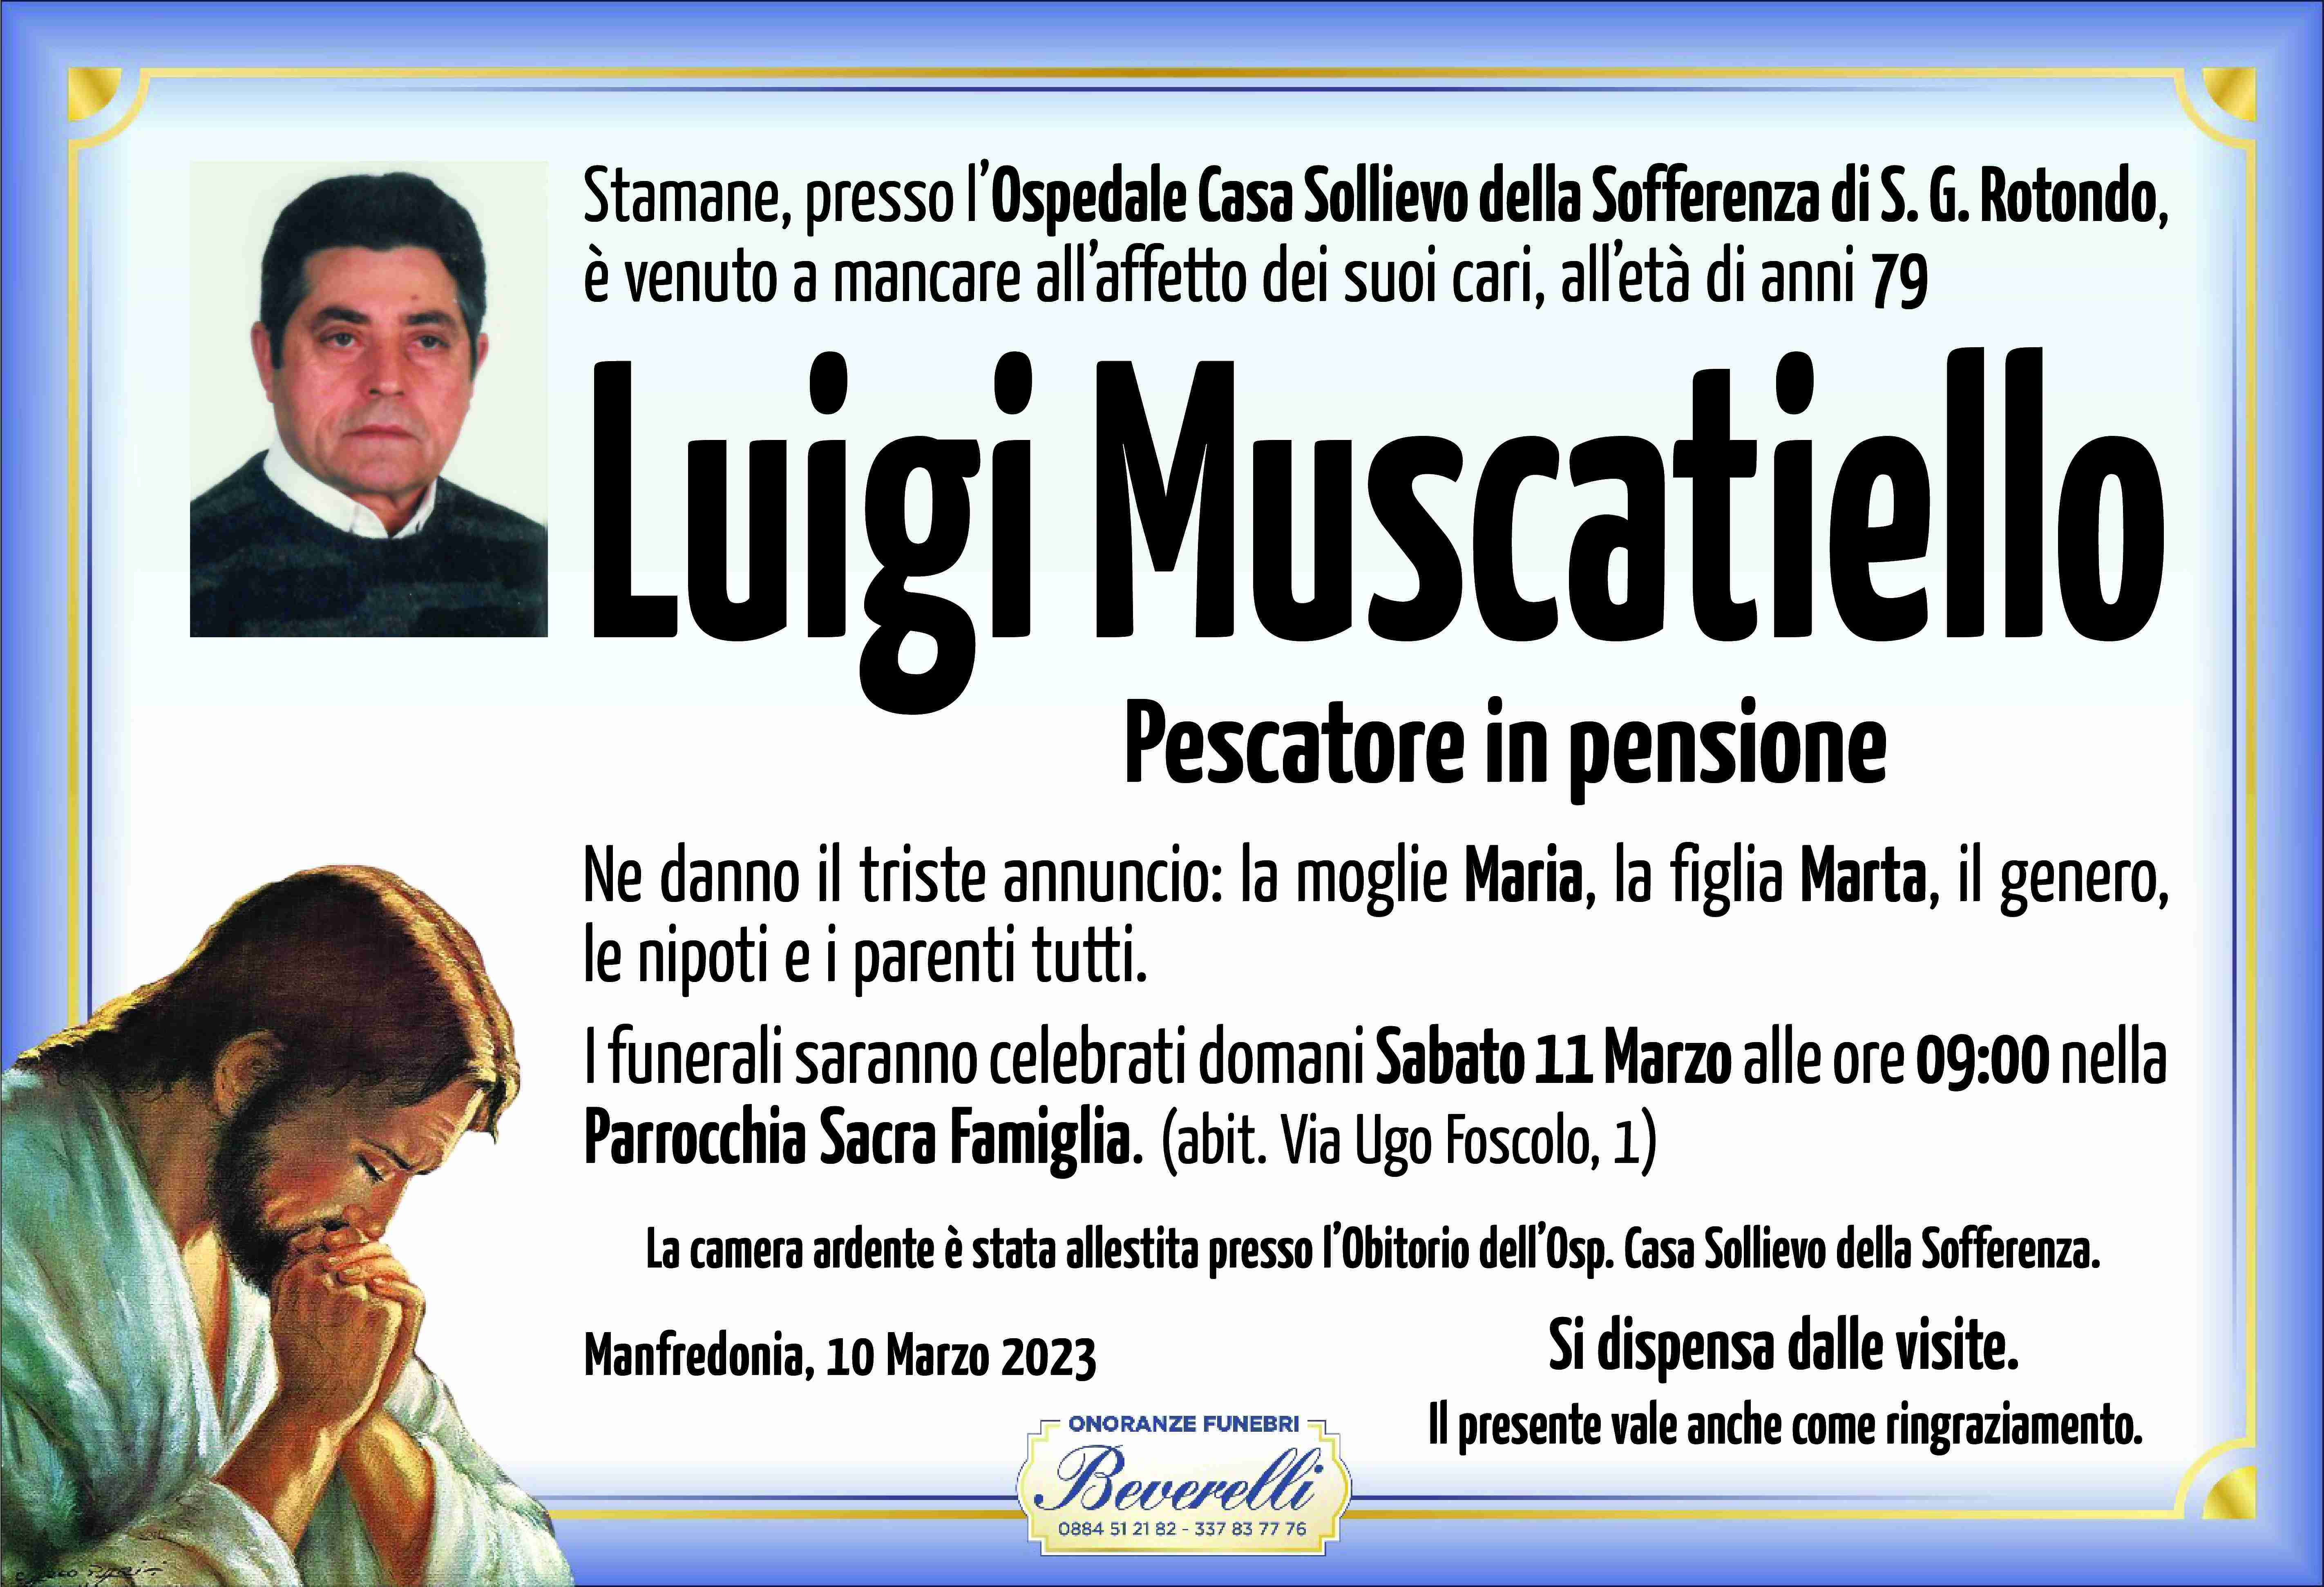 Luigi Muscatiello